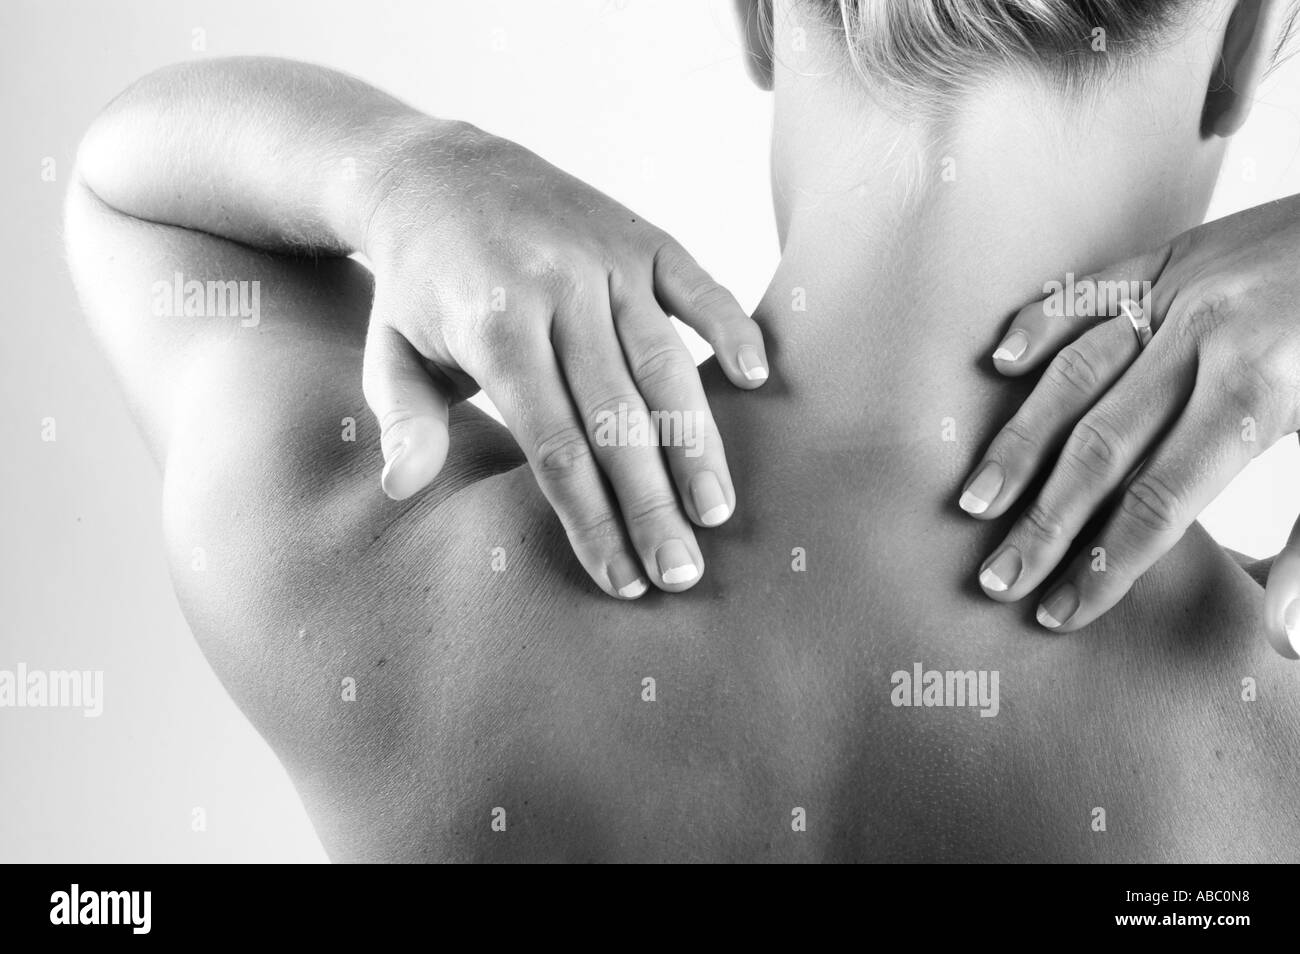 Retour de la douleur de dos douloureux maux de cou Massage musculaire tension durcissement achiness Banque D'Images